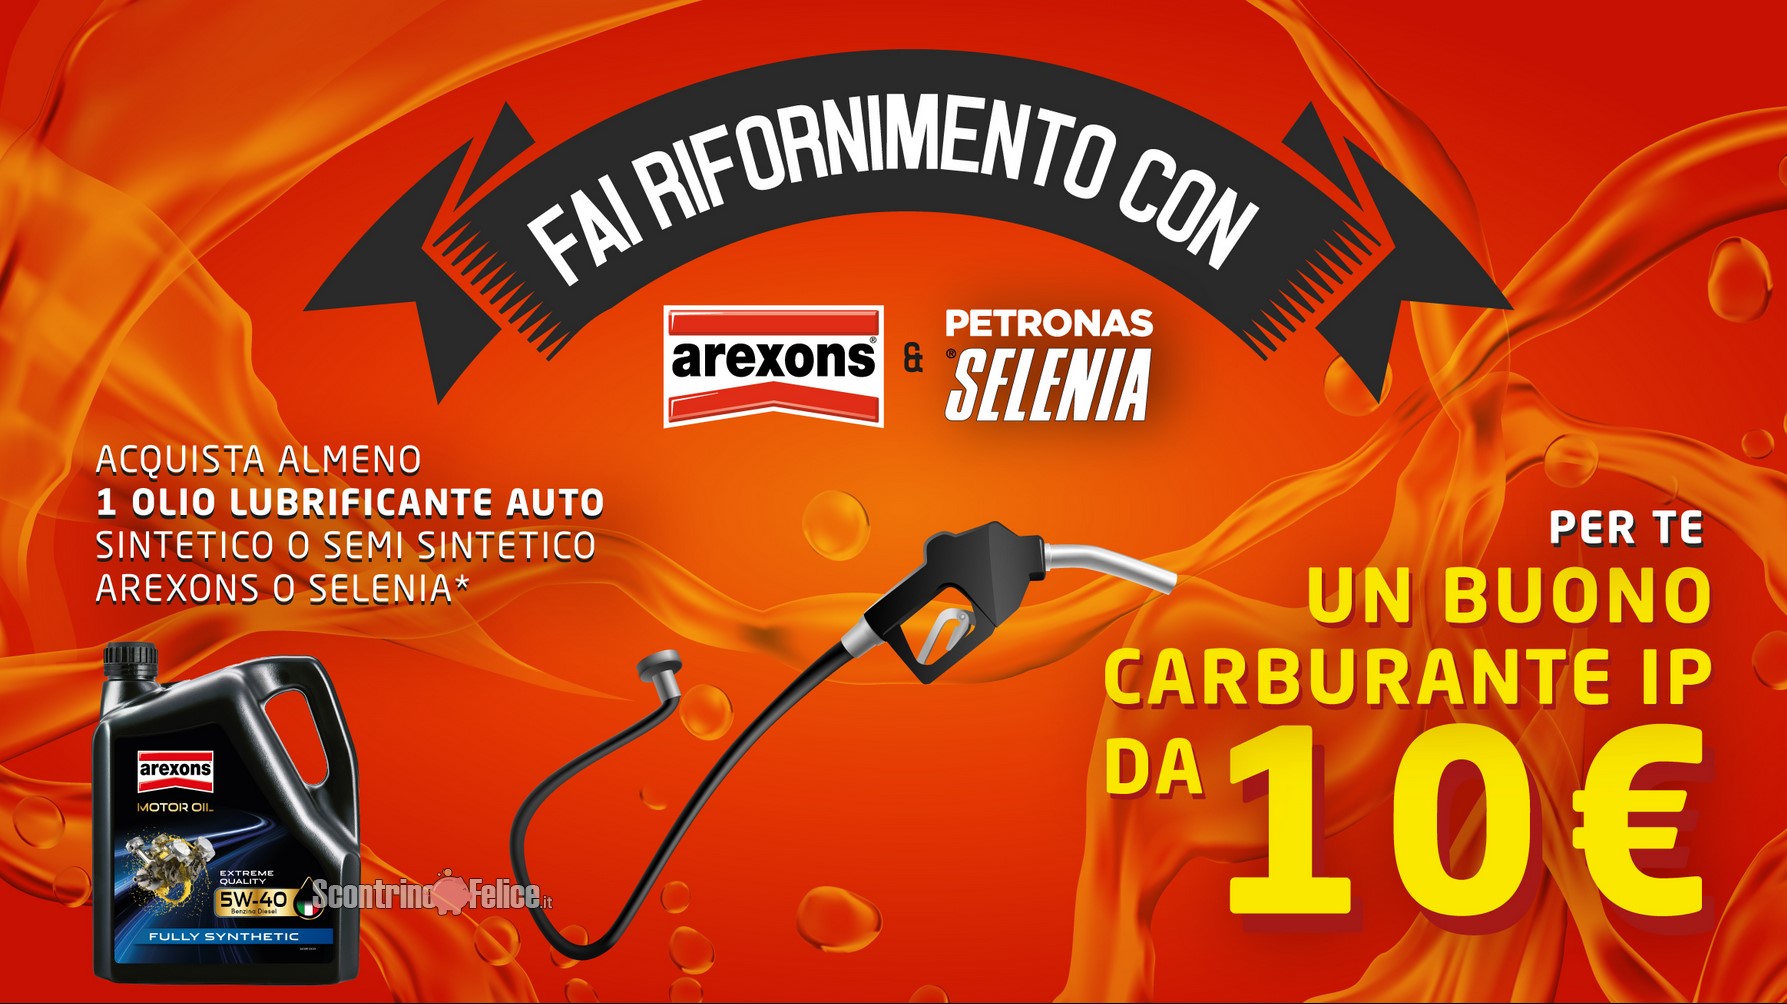 Premio certo “Fai rifornimento con Arexons e Selenia”: ricevi 1 buono carburate IP da 10 euro